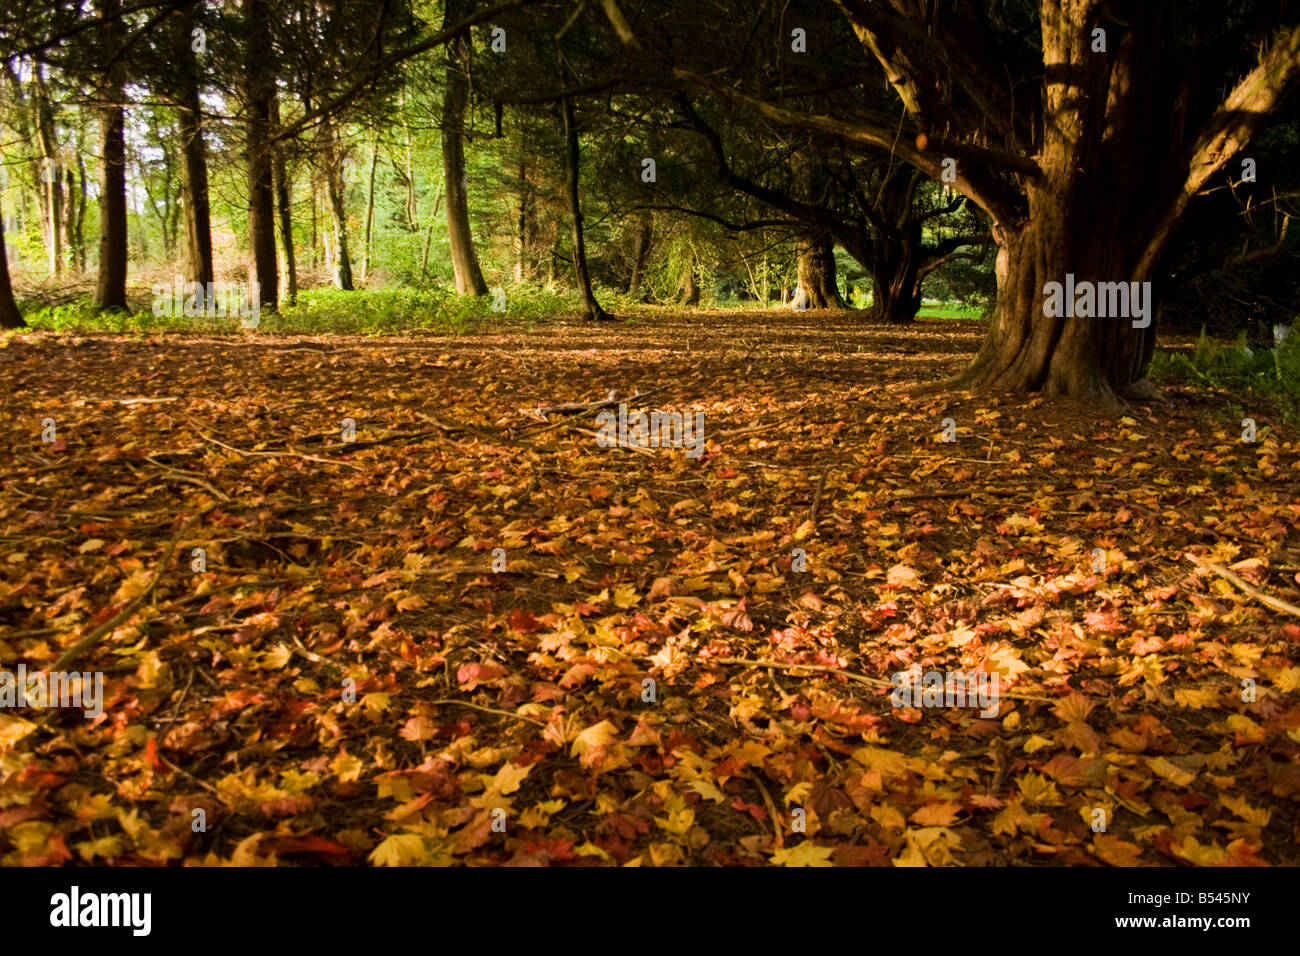 Fallen Leaves beneath Yew Trees Stock Photo